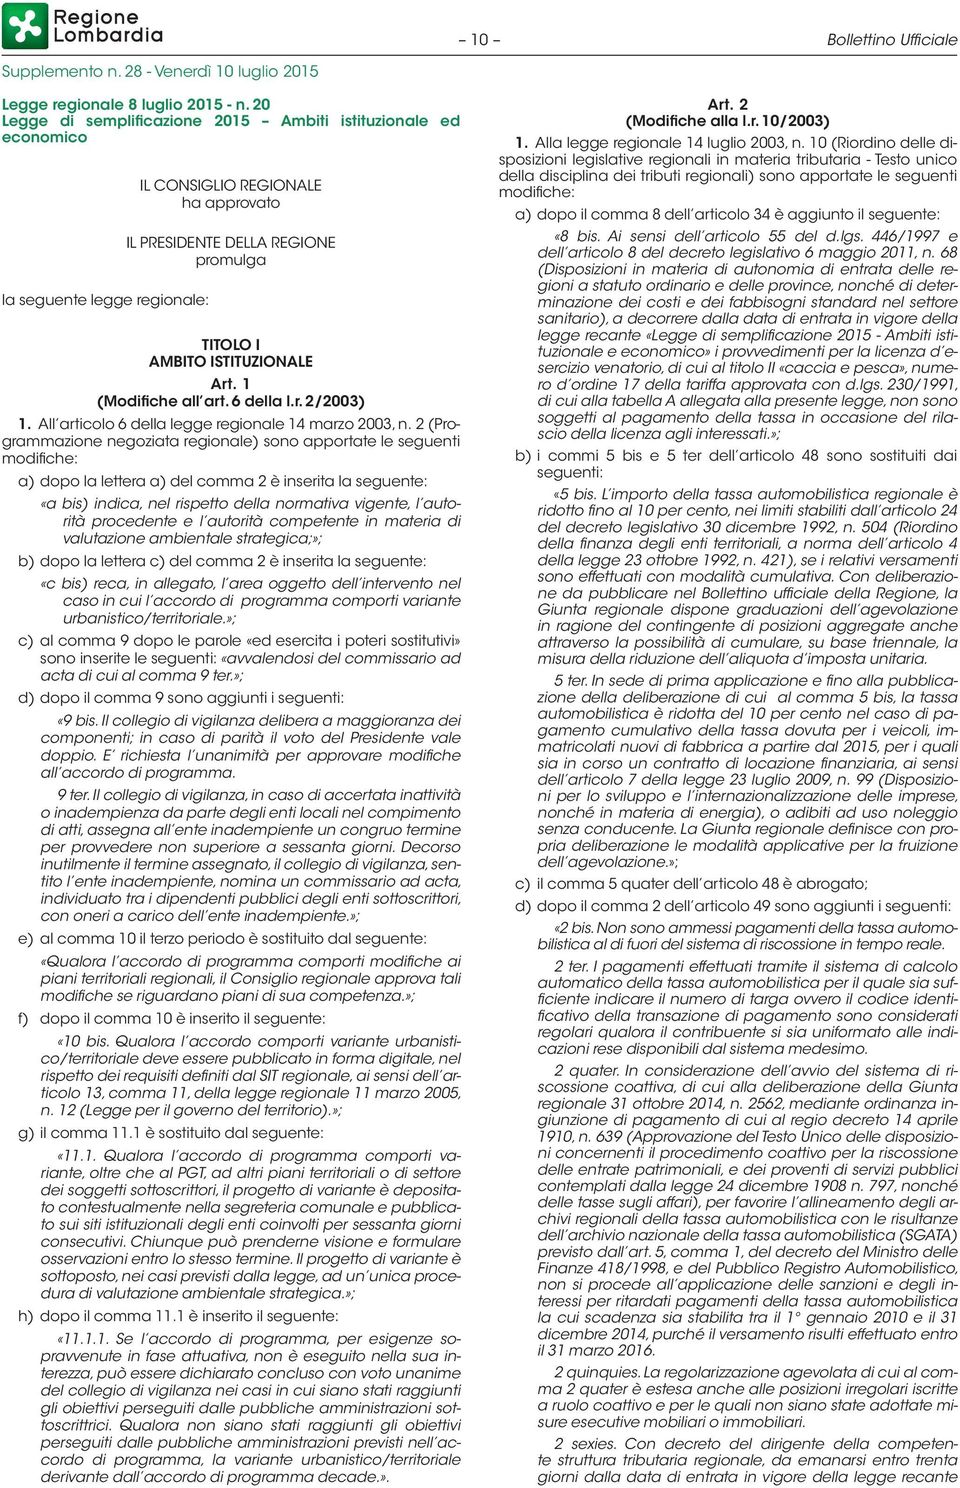 Art. 1 (Modifiche all art. 6 della l.r. 2/2003) 1. All articolo 6 della legge regionale 14 marzo 2003, n.